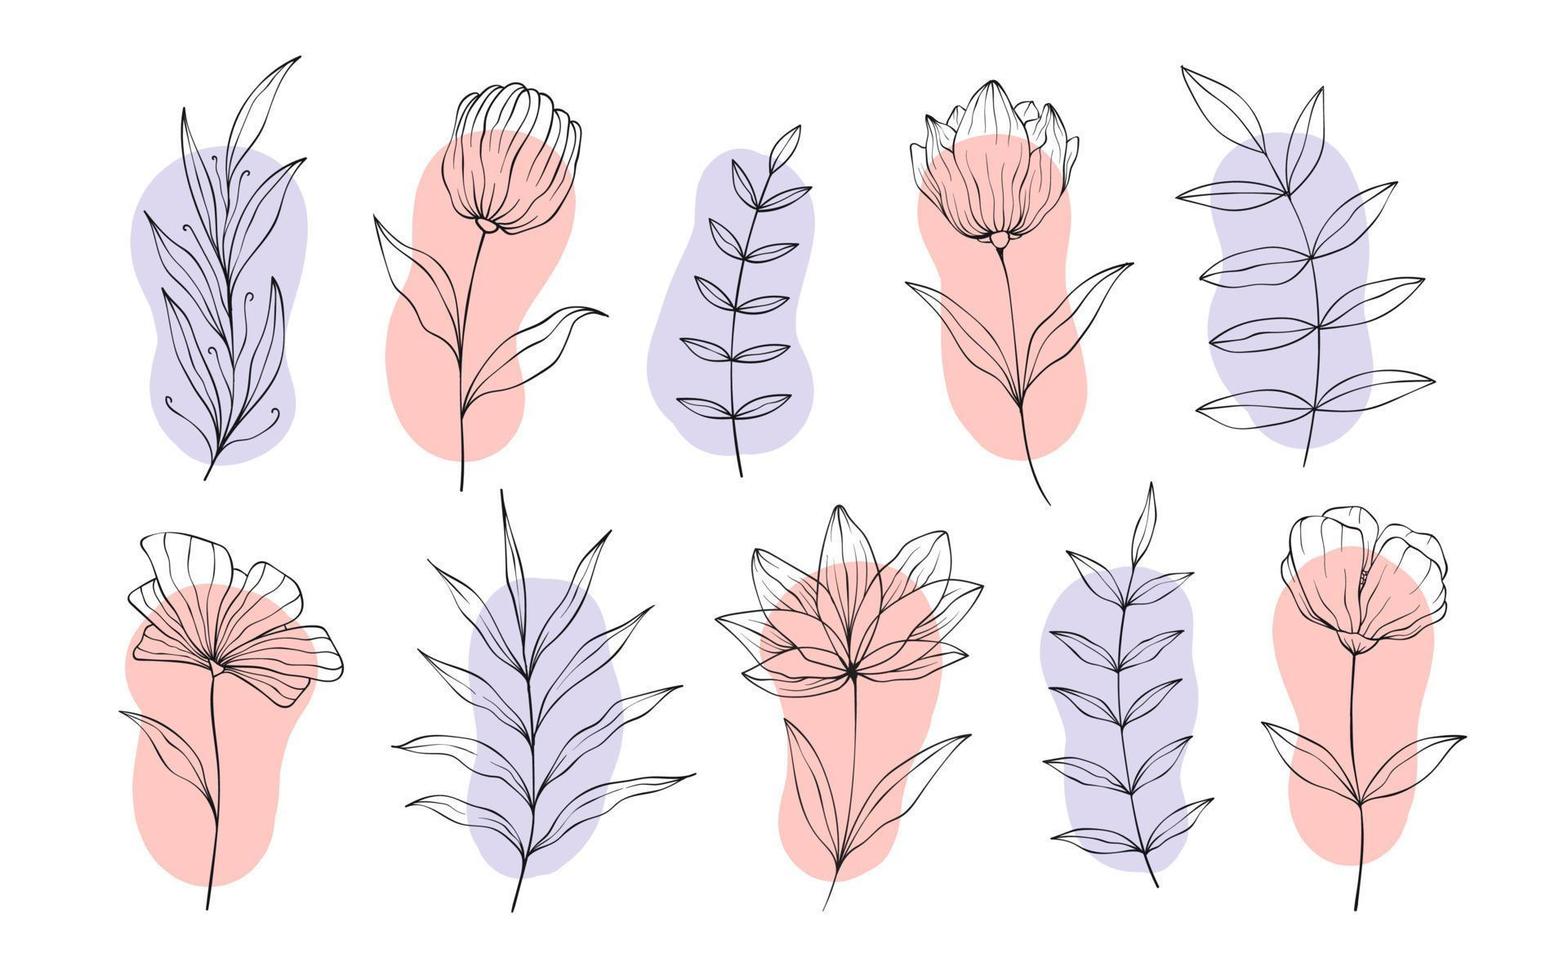 conjunto de elementos florales botánicos dibujados a mano. ilustración vectorial aislado sobre fondo blanco vector